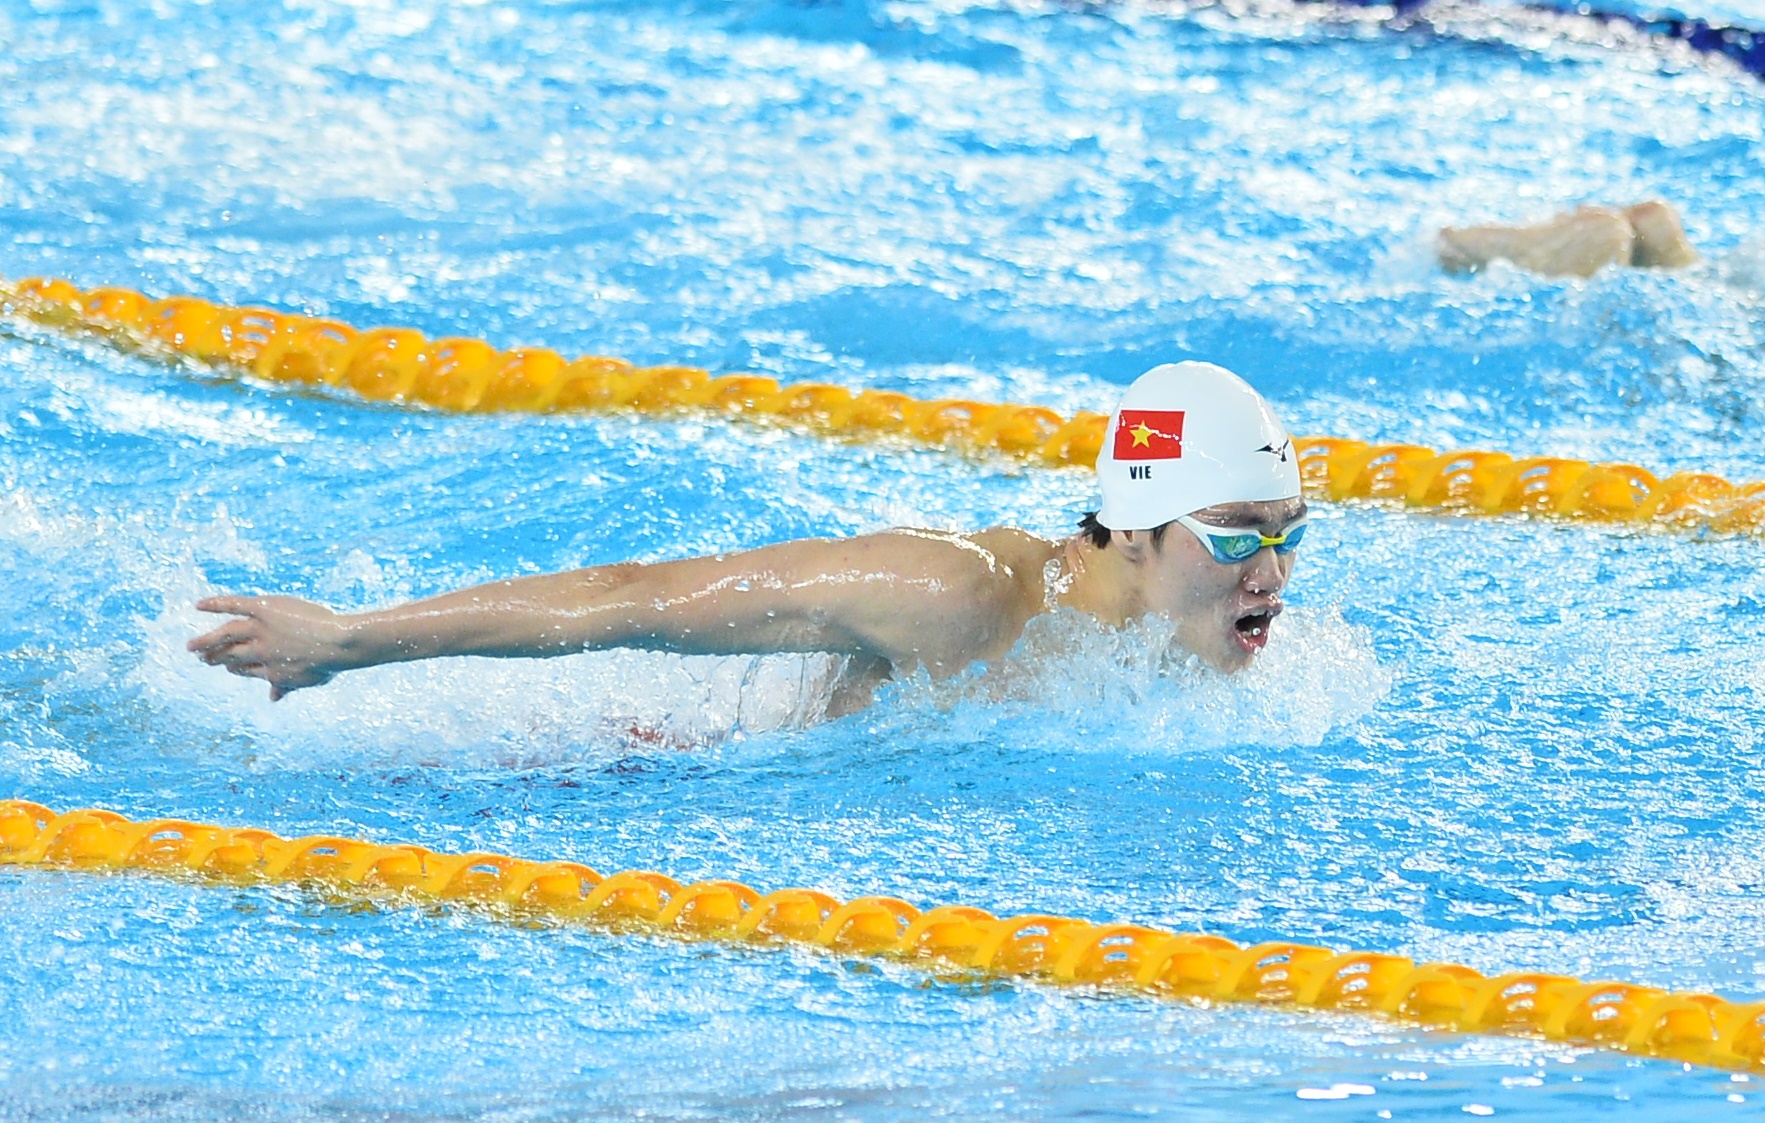 Khoảnh khắc bùng nổ của kỷ lục gia SEA Games Trần Hưng Nguyên, mang về huy chương vàng cho bơi Việt Nam - Ảnh 2.